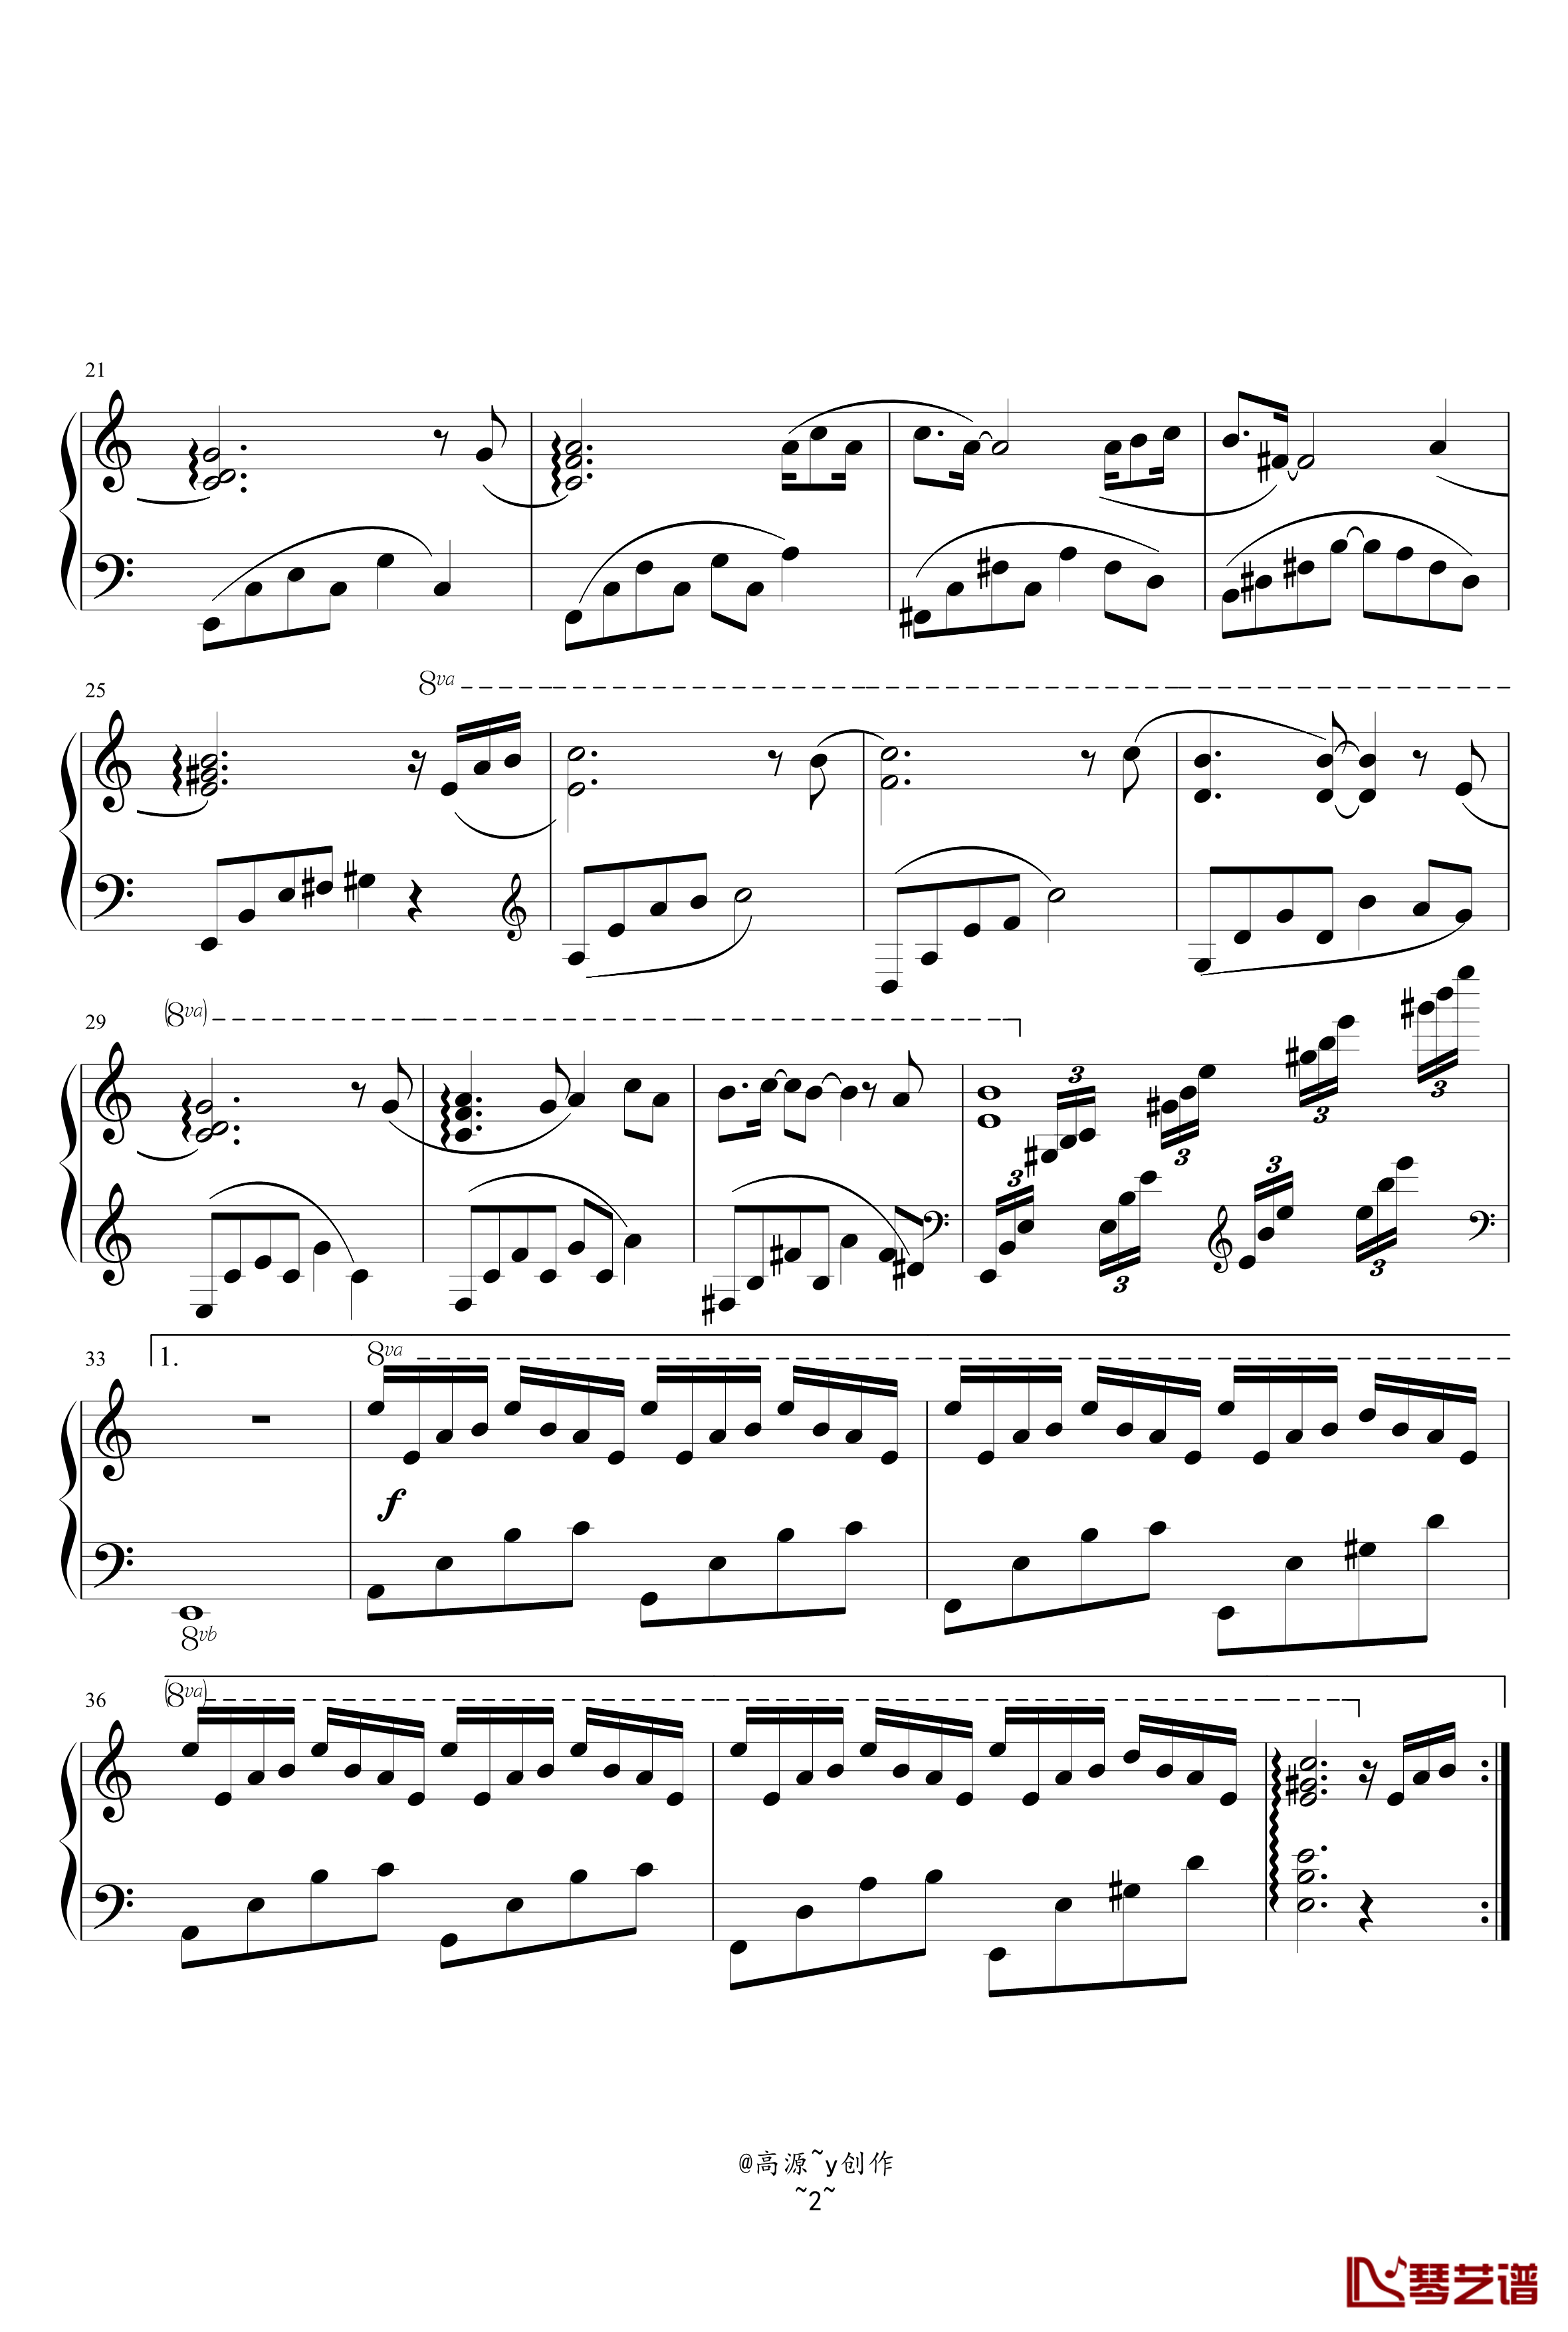 月光钢琴曲钢琴谱-高源2